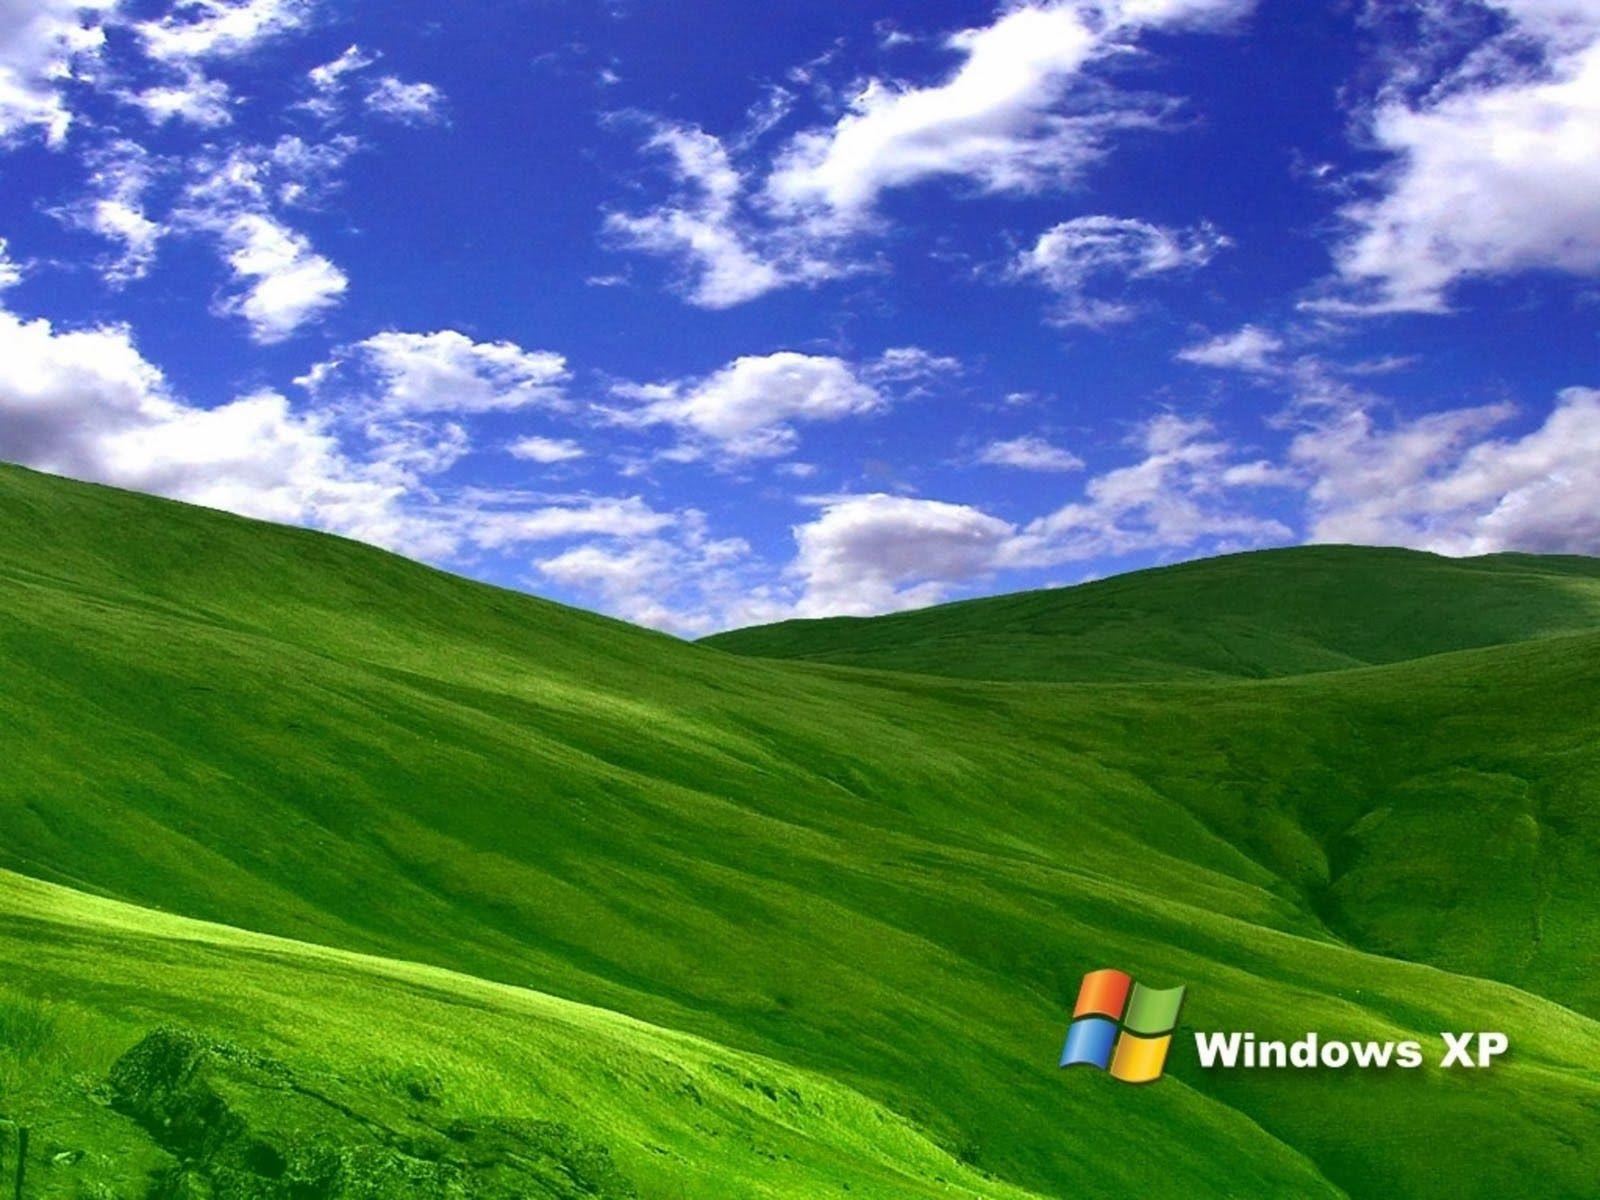 Bạn đã tìm kiếm những hình nền đẹp tuyệt vời cho máy tính của mình? Windows XP Wallpapers cung cấp cho bạn những bức tranh hình nền đẹp mắt mà bạn không nên bỏ lỡ.